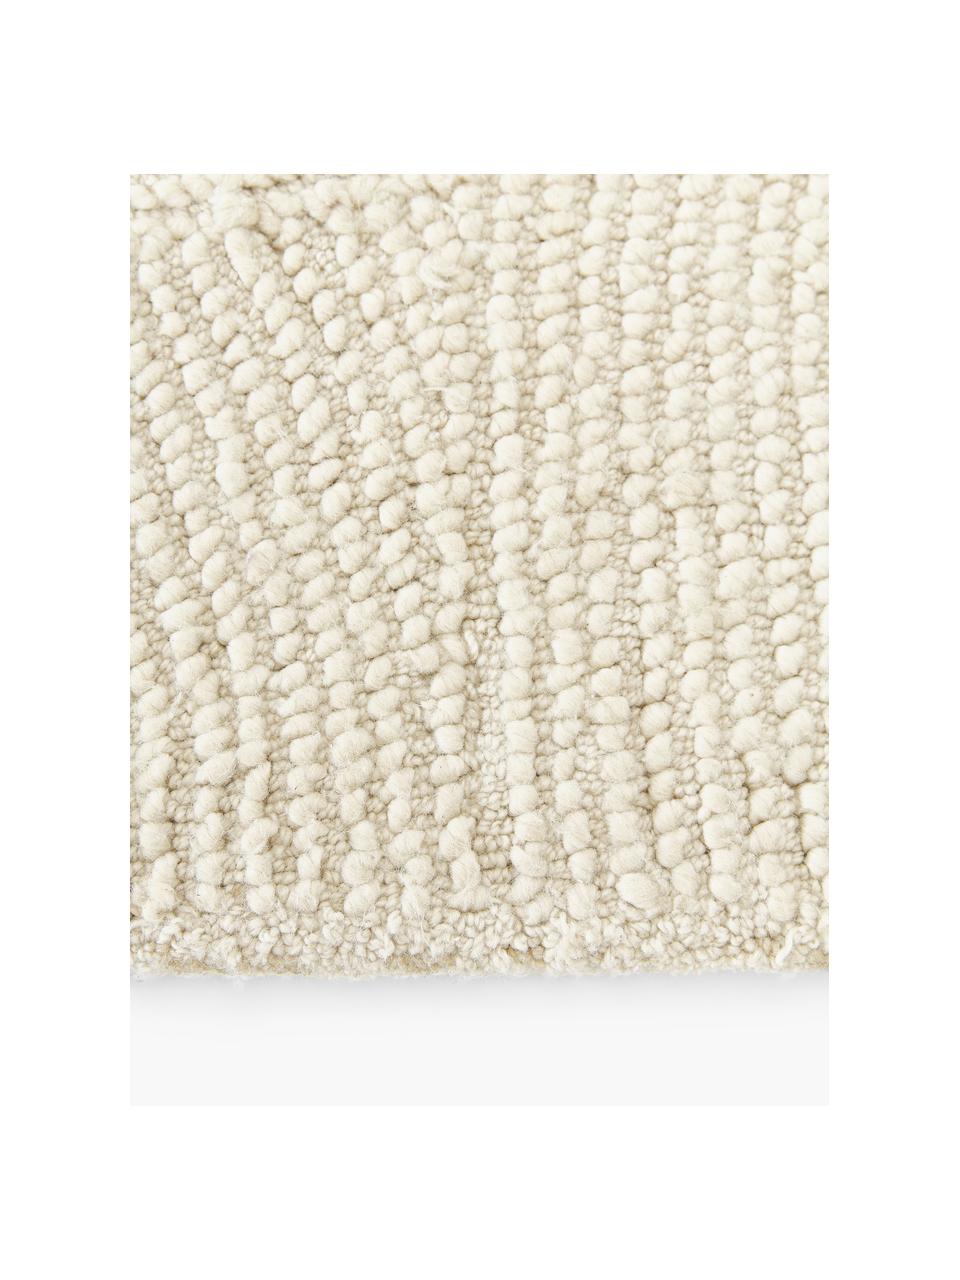 Handgetufteter Kurzflor-Teppich Eleni aus recycelten Materialien, Flor: 100 % Polyester, Beige, B 80 x L 150 cm (Größe XS)